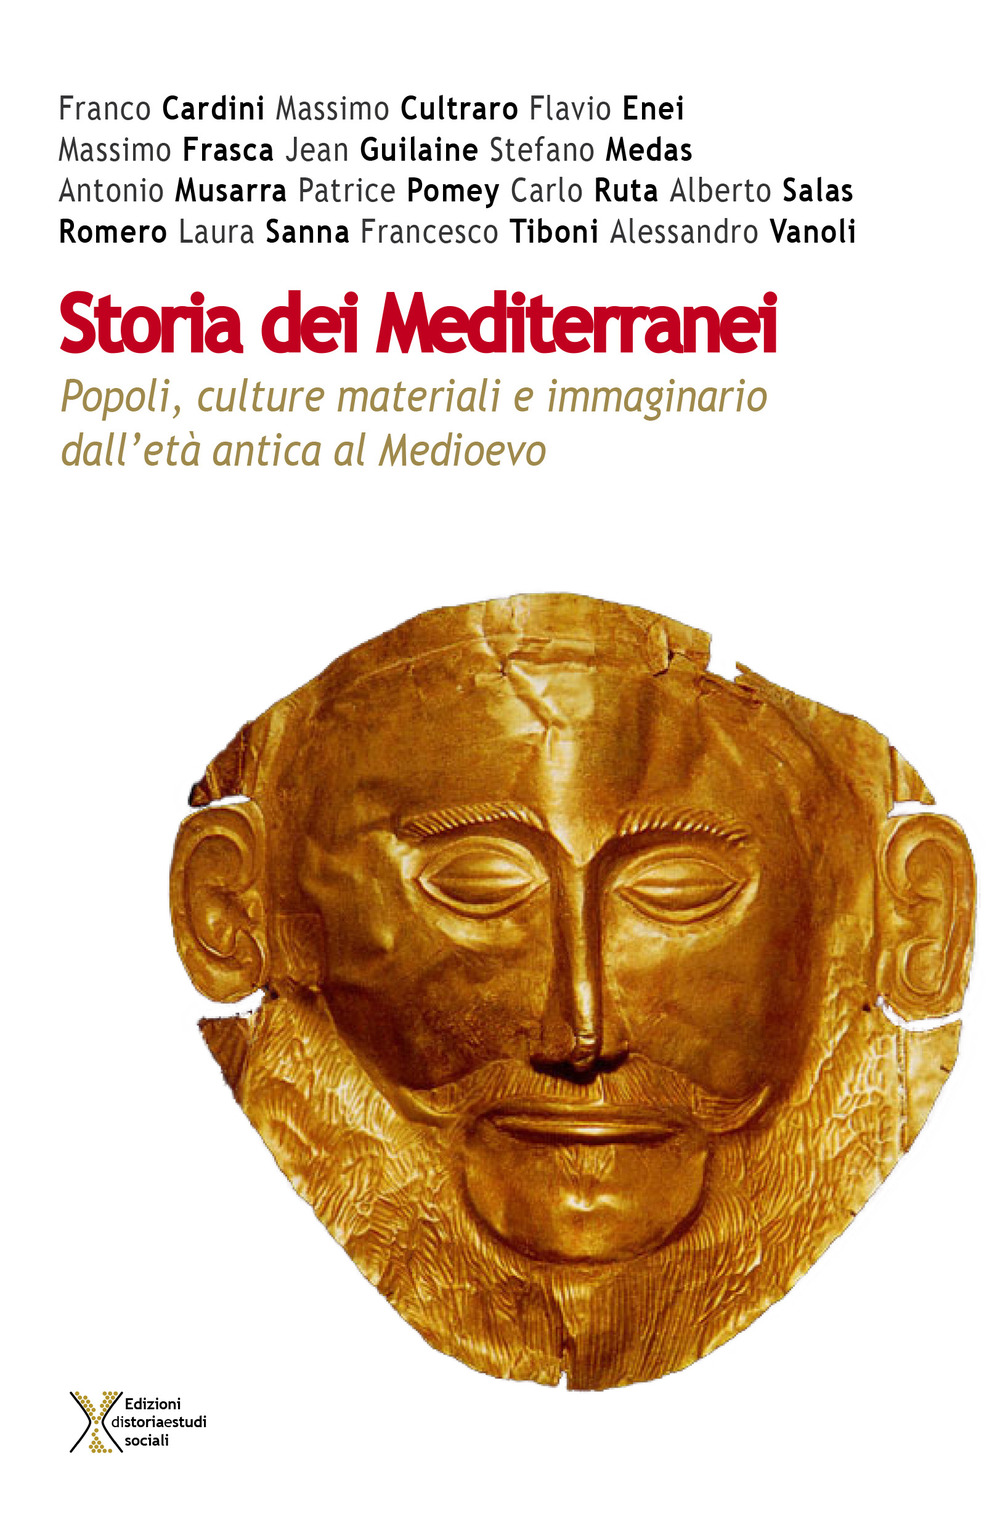 Storia dei Mediterranei. Popoli, culture materiali e immaginario dall'età antica al Medioevo